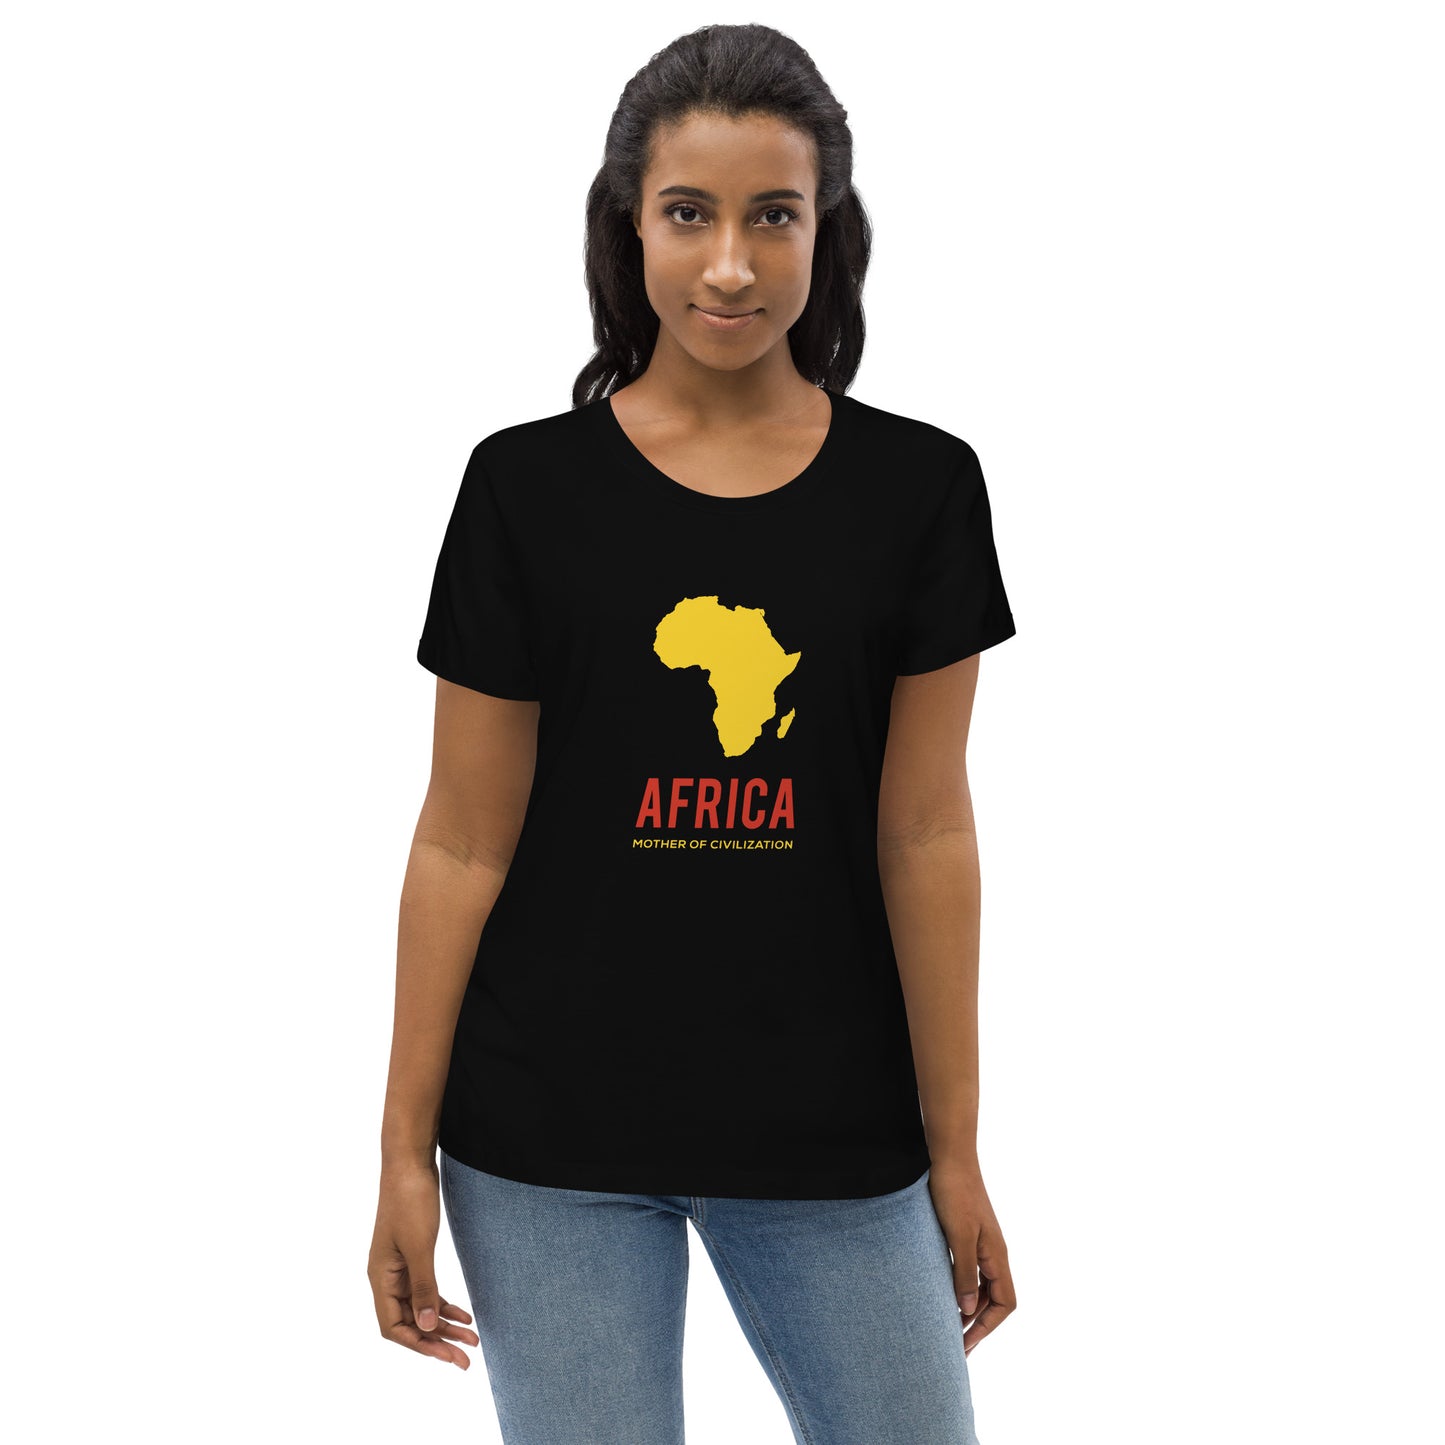 AFRICA - MOTHER OF CIVILIZATION Women's Tee